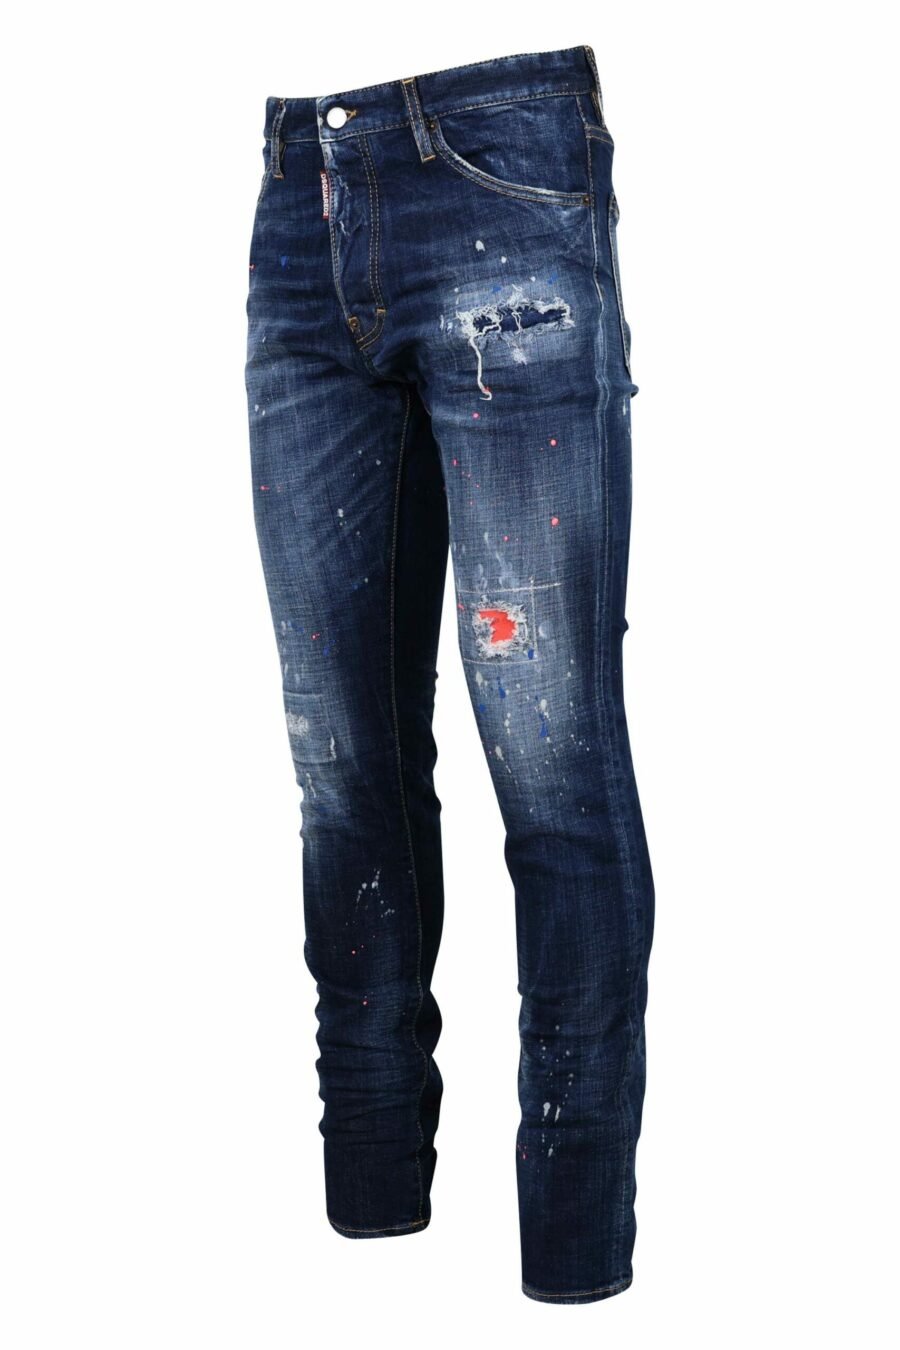 Jean bleu "cool guy jean" porté avec de la peinture orange - 8054148308261 échelle 1